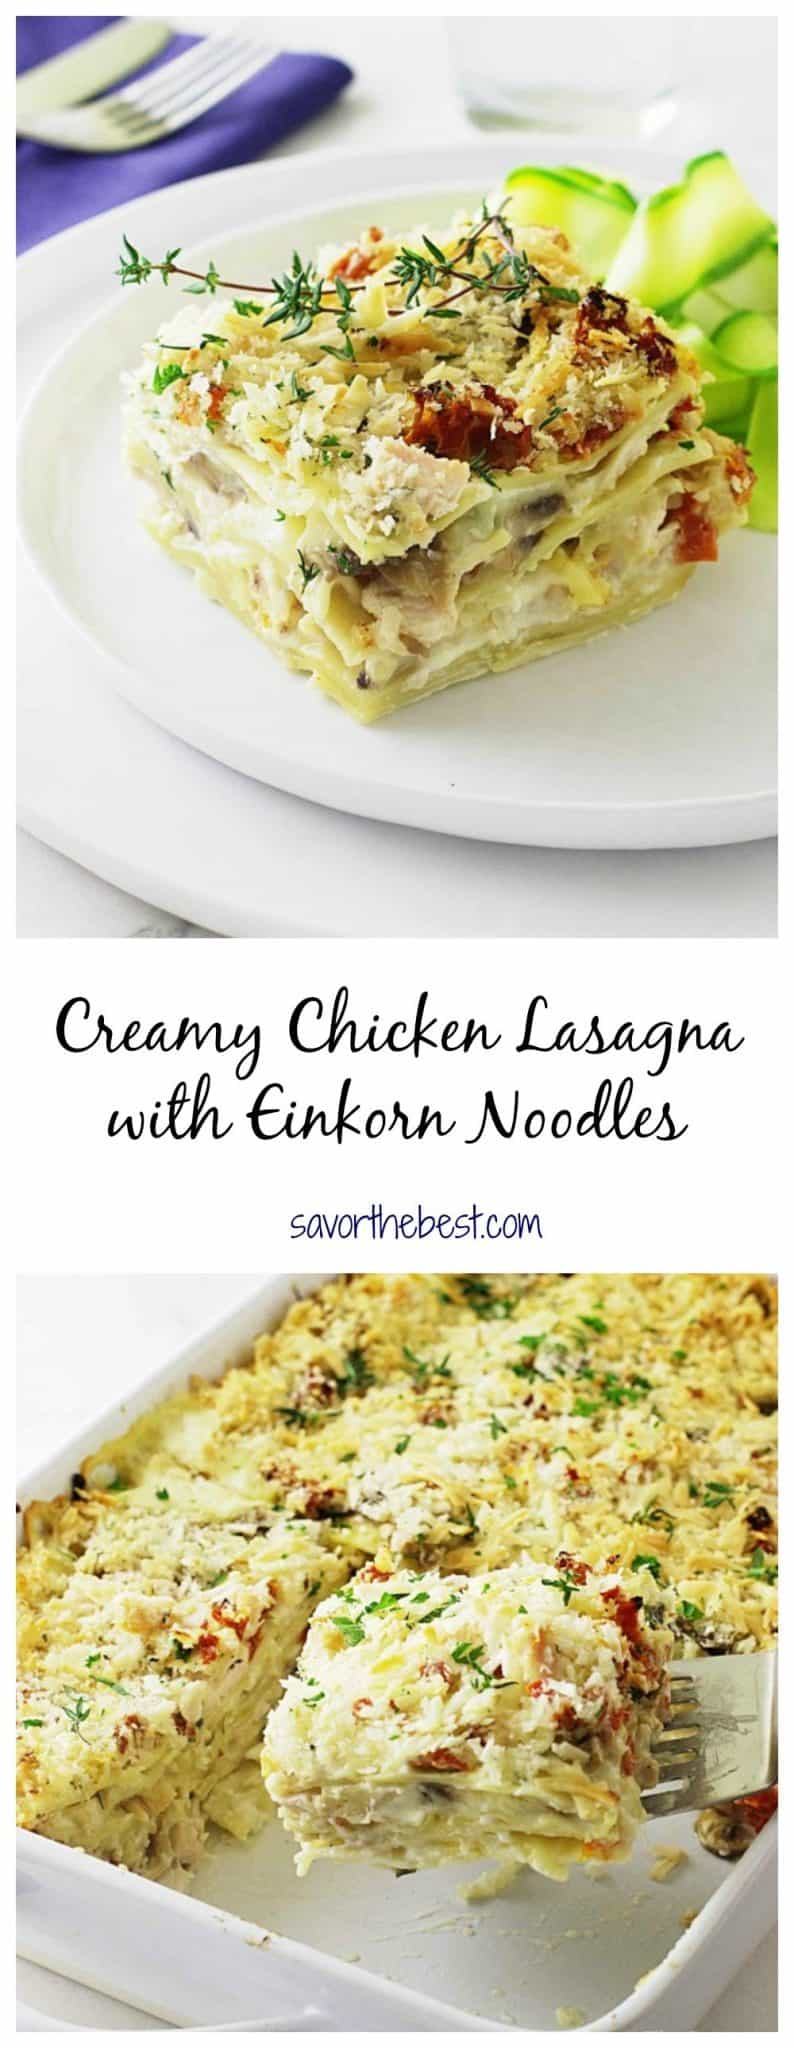 Creamy Chicken Lasagna with Einkorn Noodles - Savor the Best